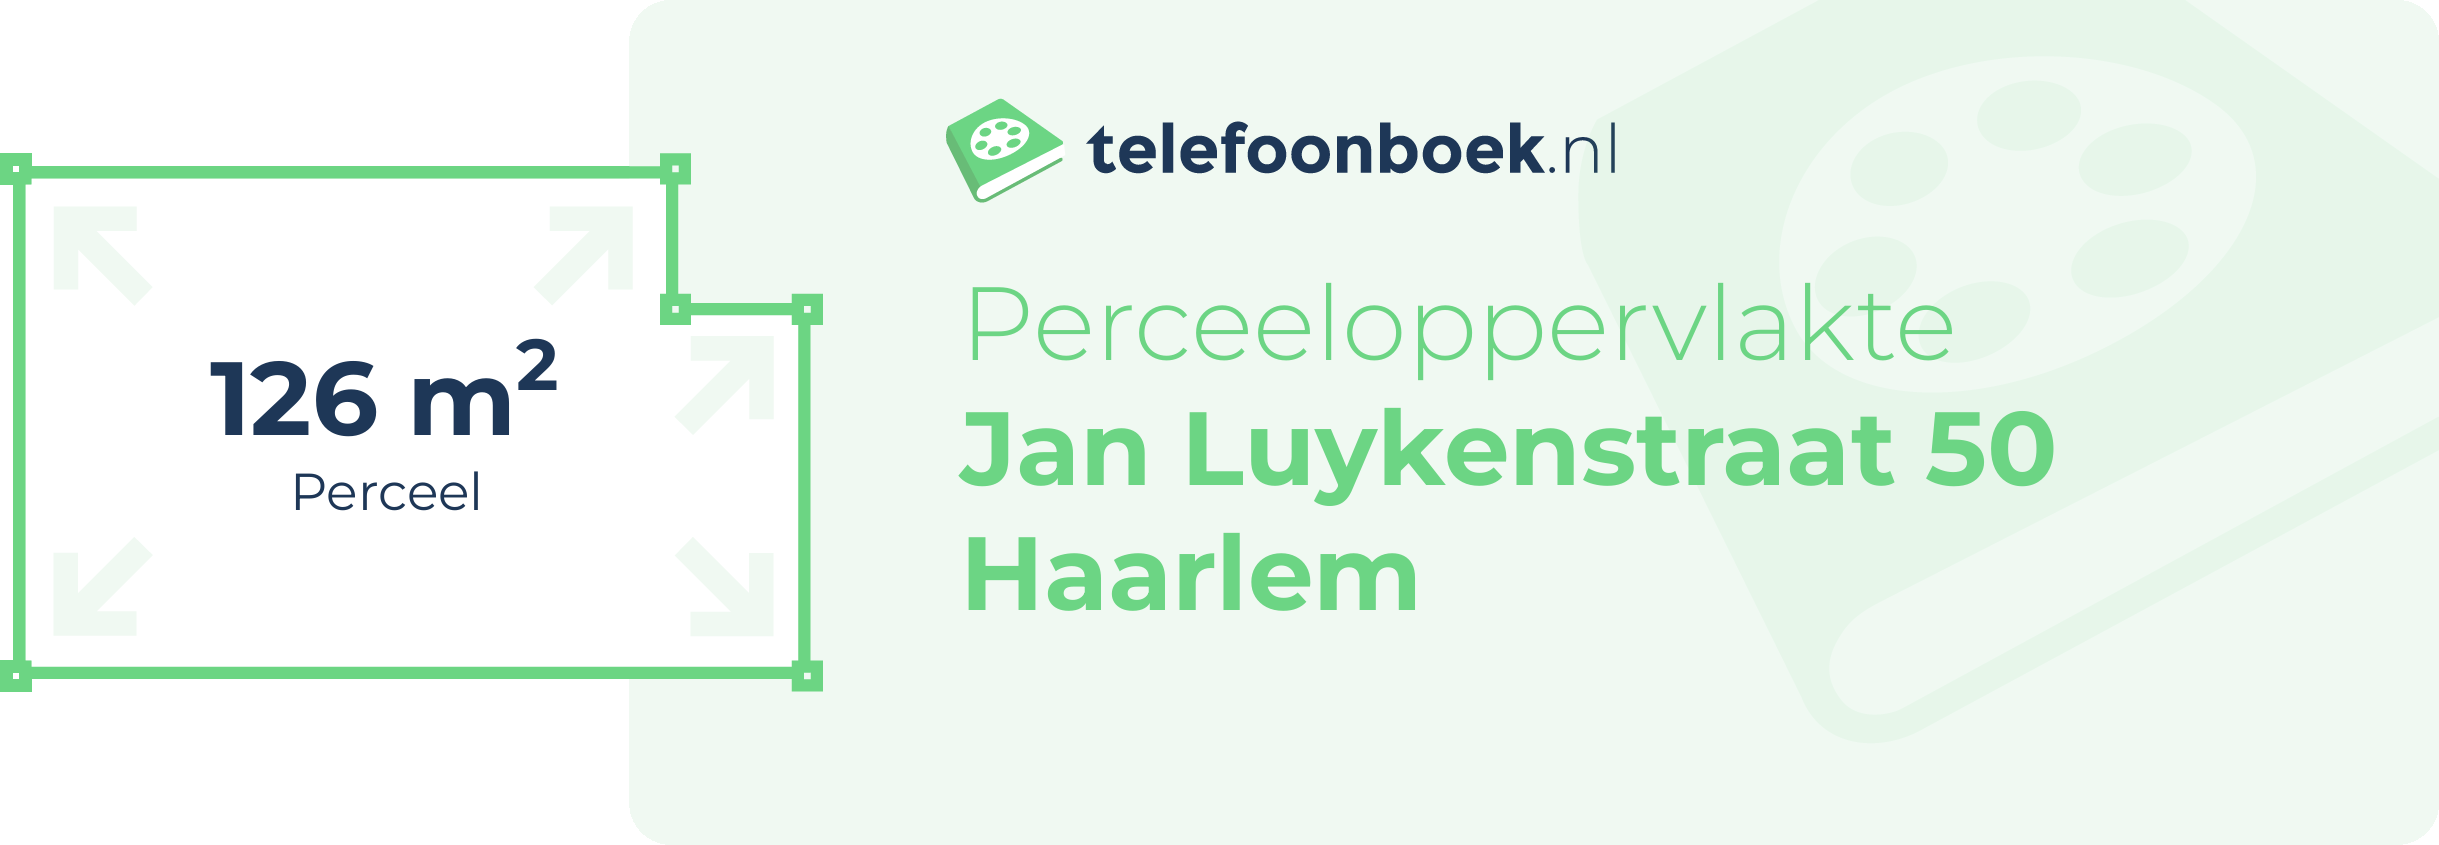 Perceeloppervlakte Jan Luykenstraat 50 Haarlem